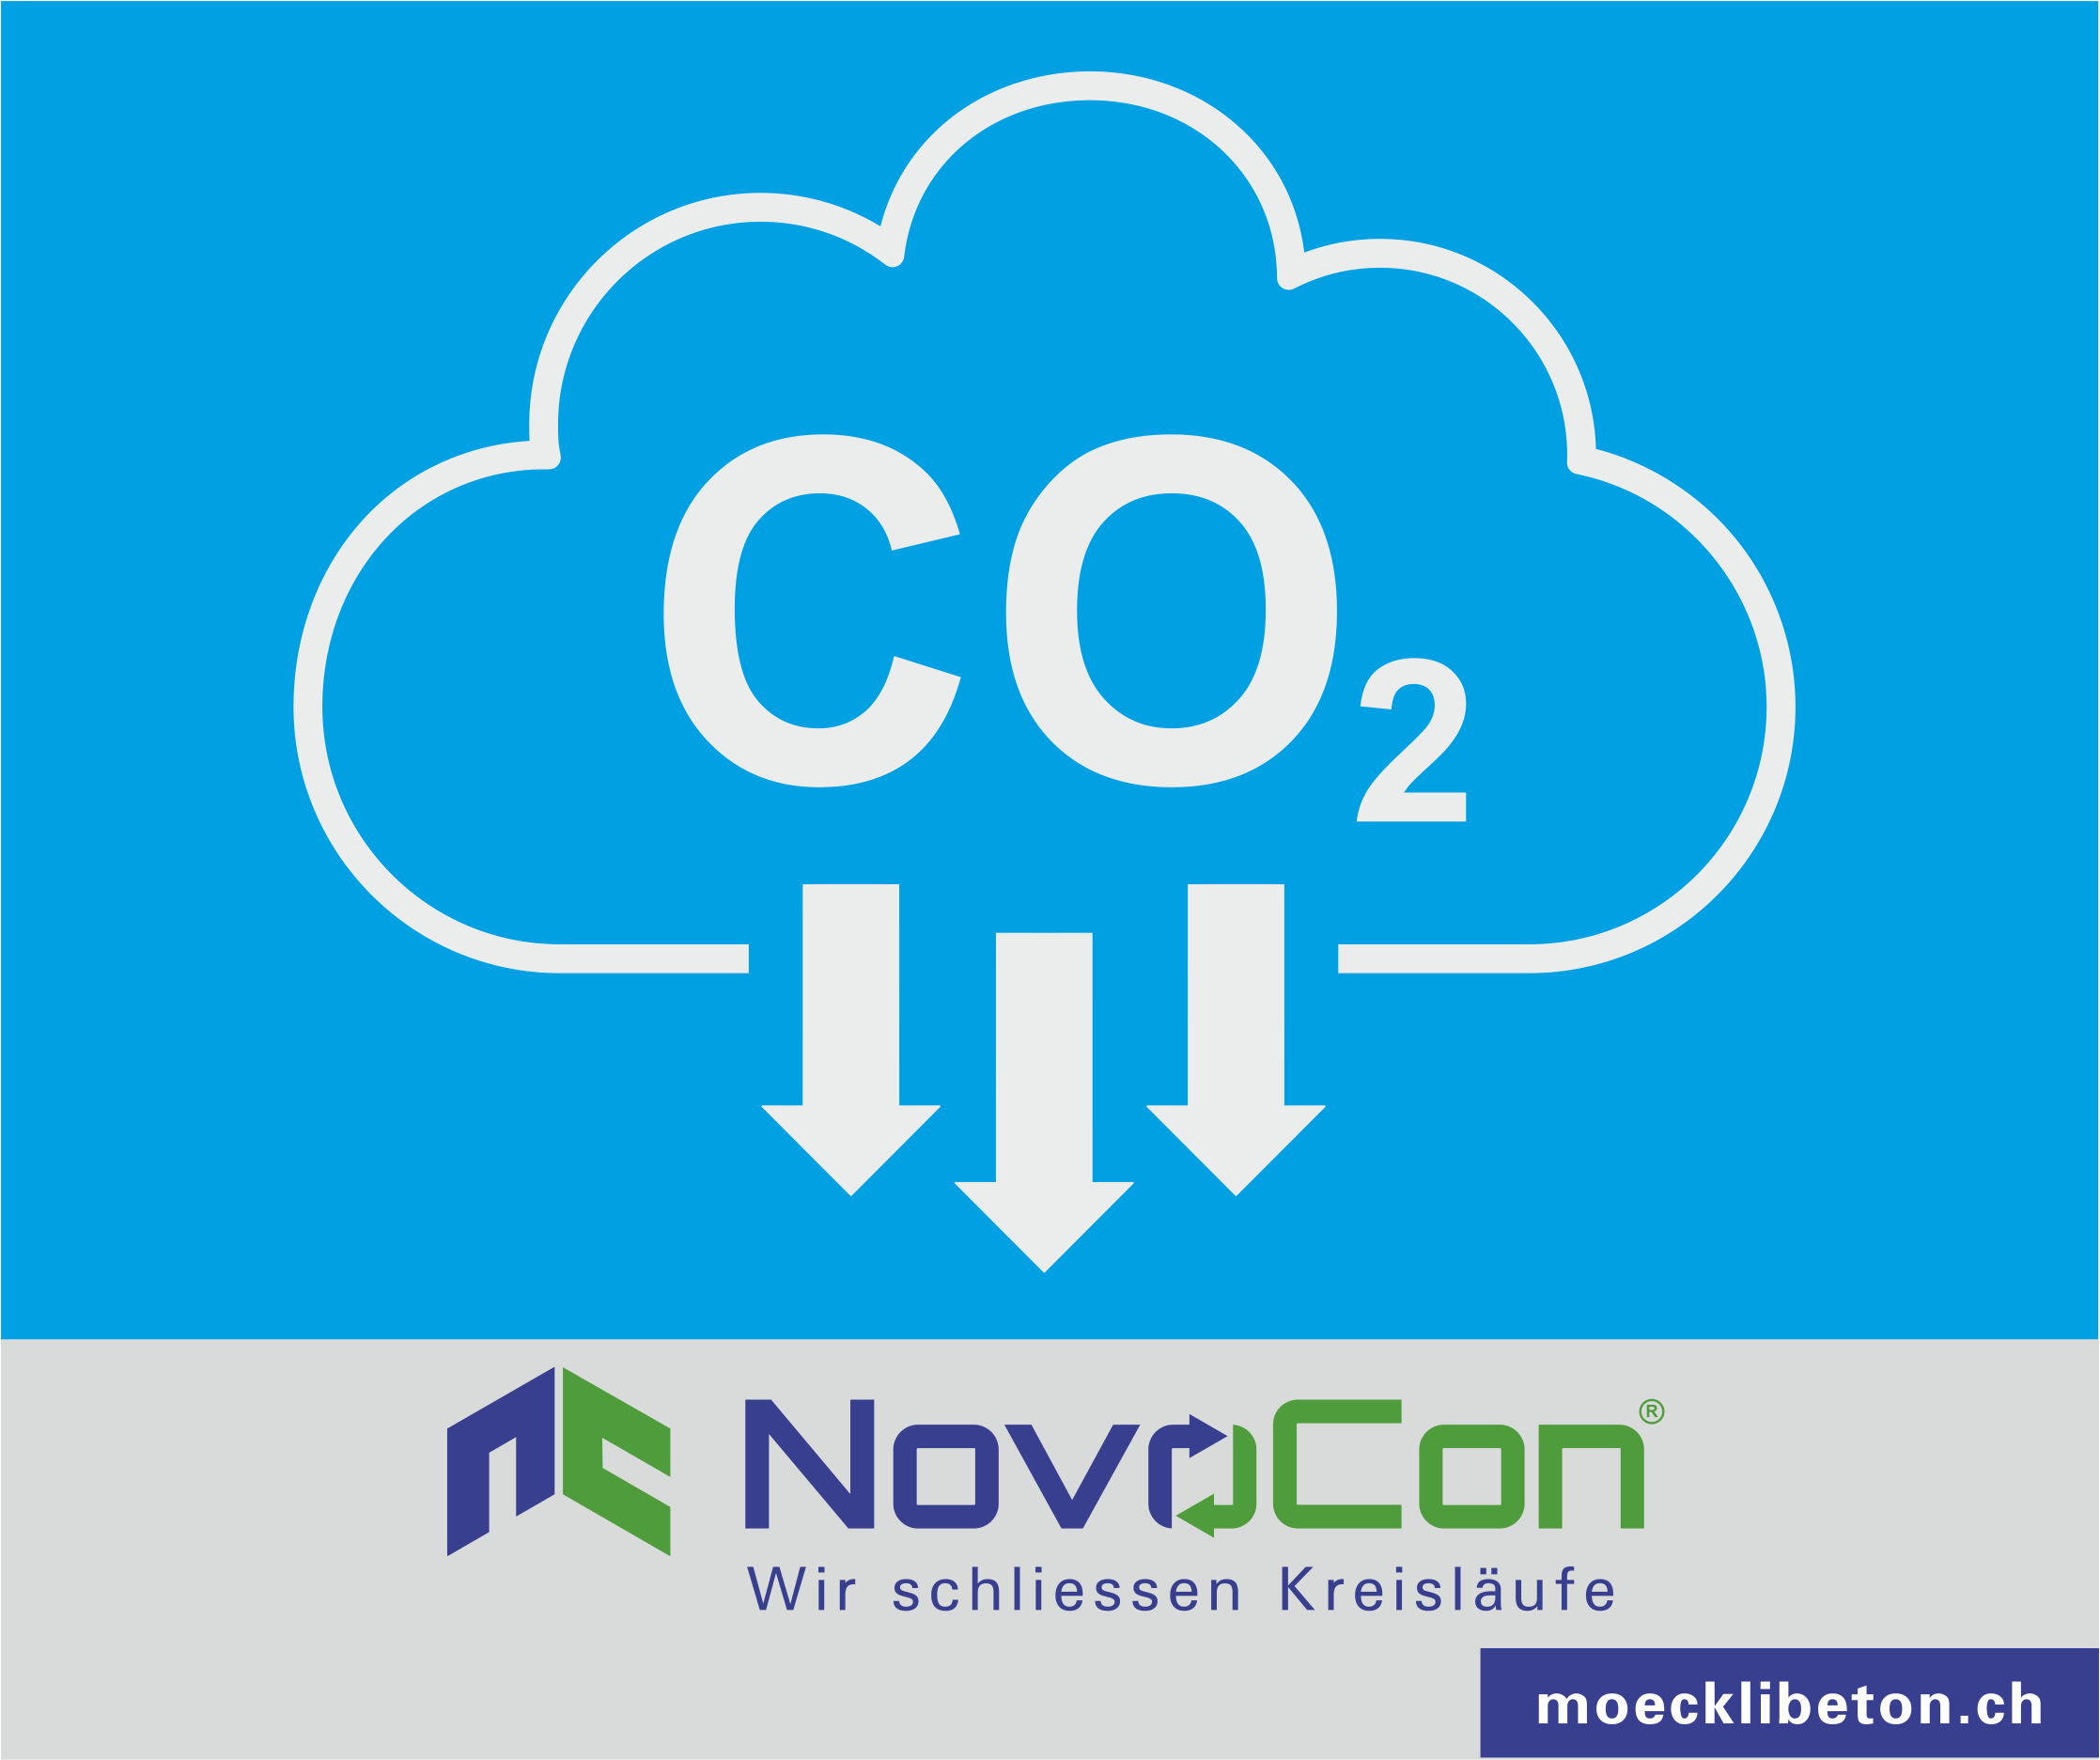 Beton CO2 Speicherung